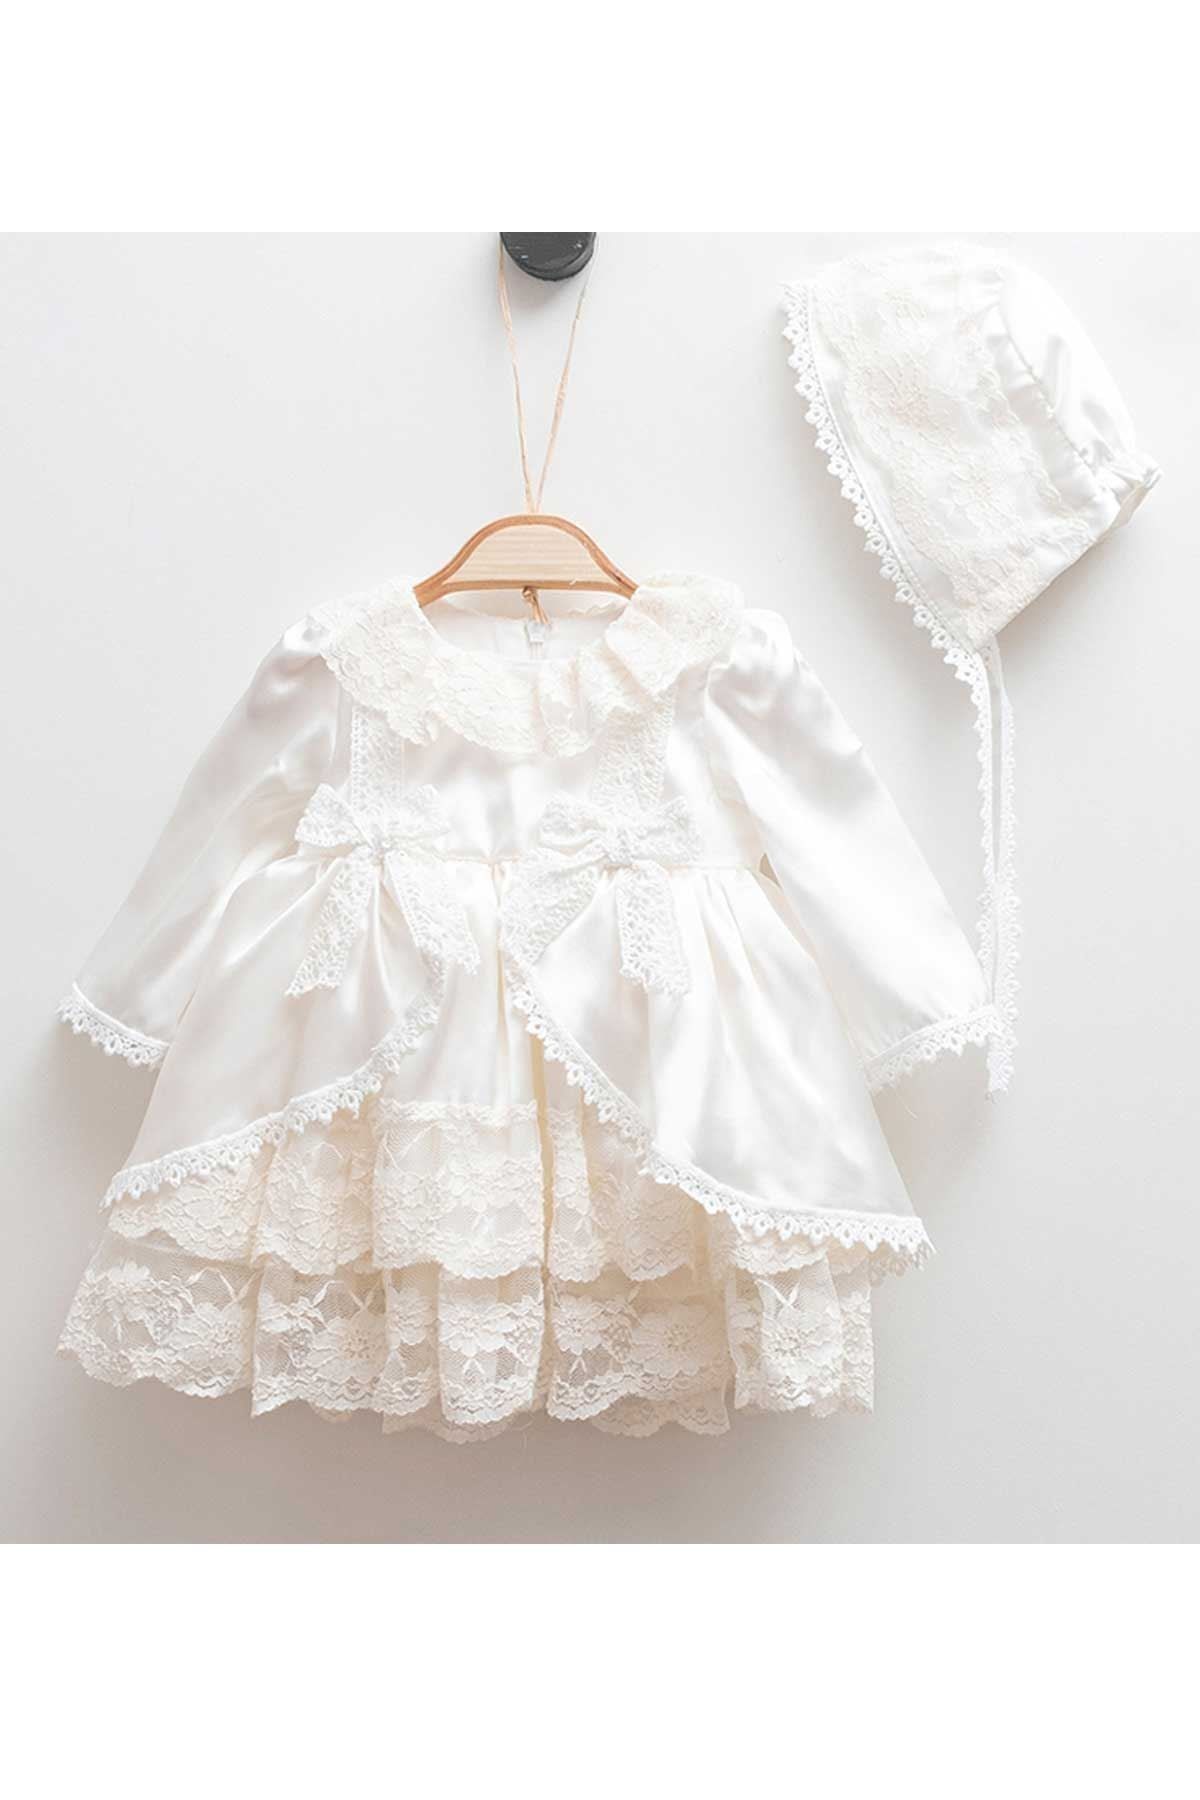 Modakids Krem Pelerin Dantel Kız Bebek Elbise Set